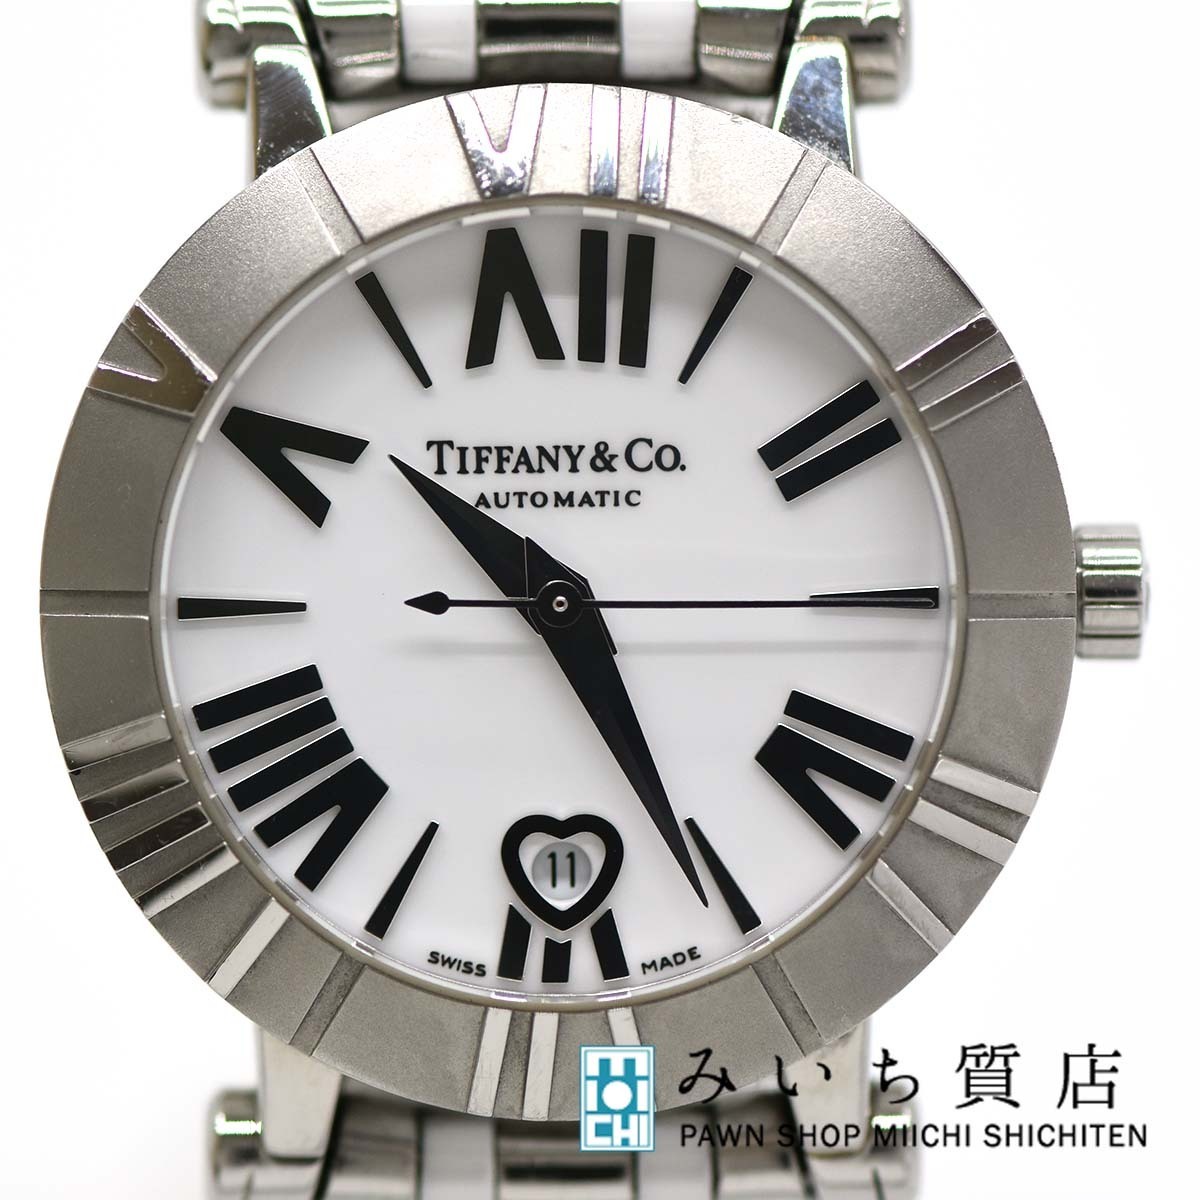 国内外の人気 & TIFFANY 腕時計 質屋 Co. みいち質店 自動巻き